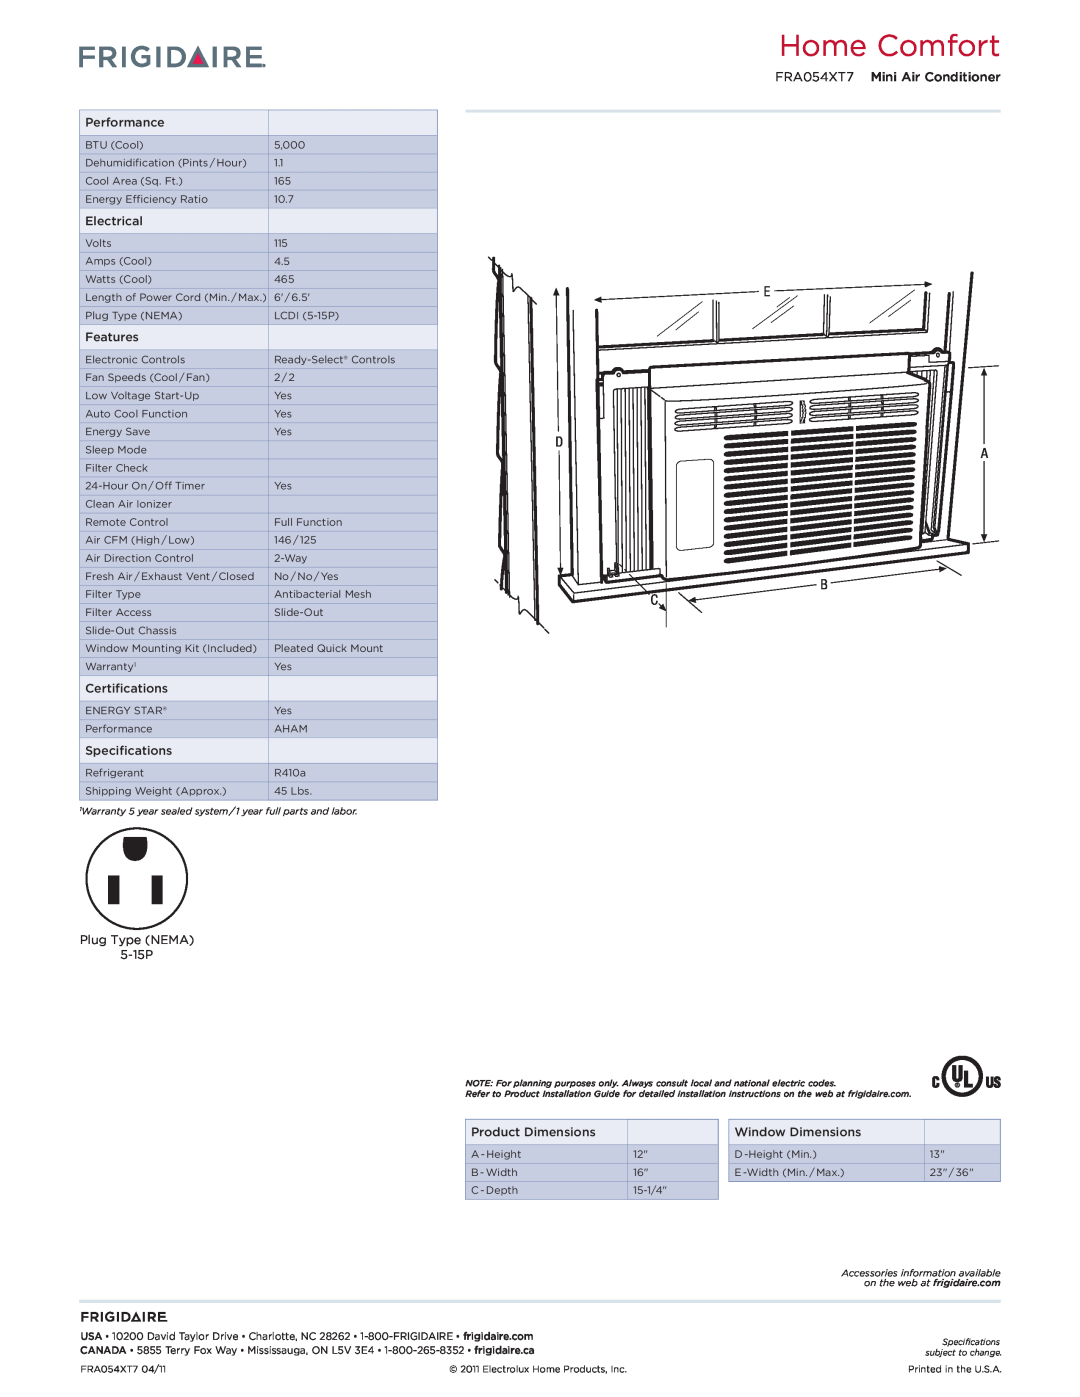 Frigidaire dimensions Home Comfort, E D A B C, FRA054XT7 Mini Air Conditioner 